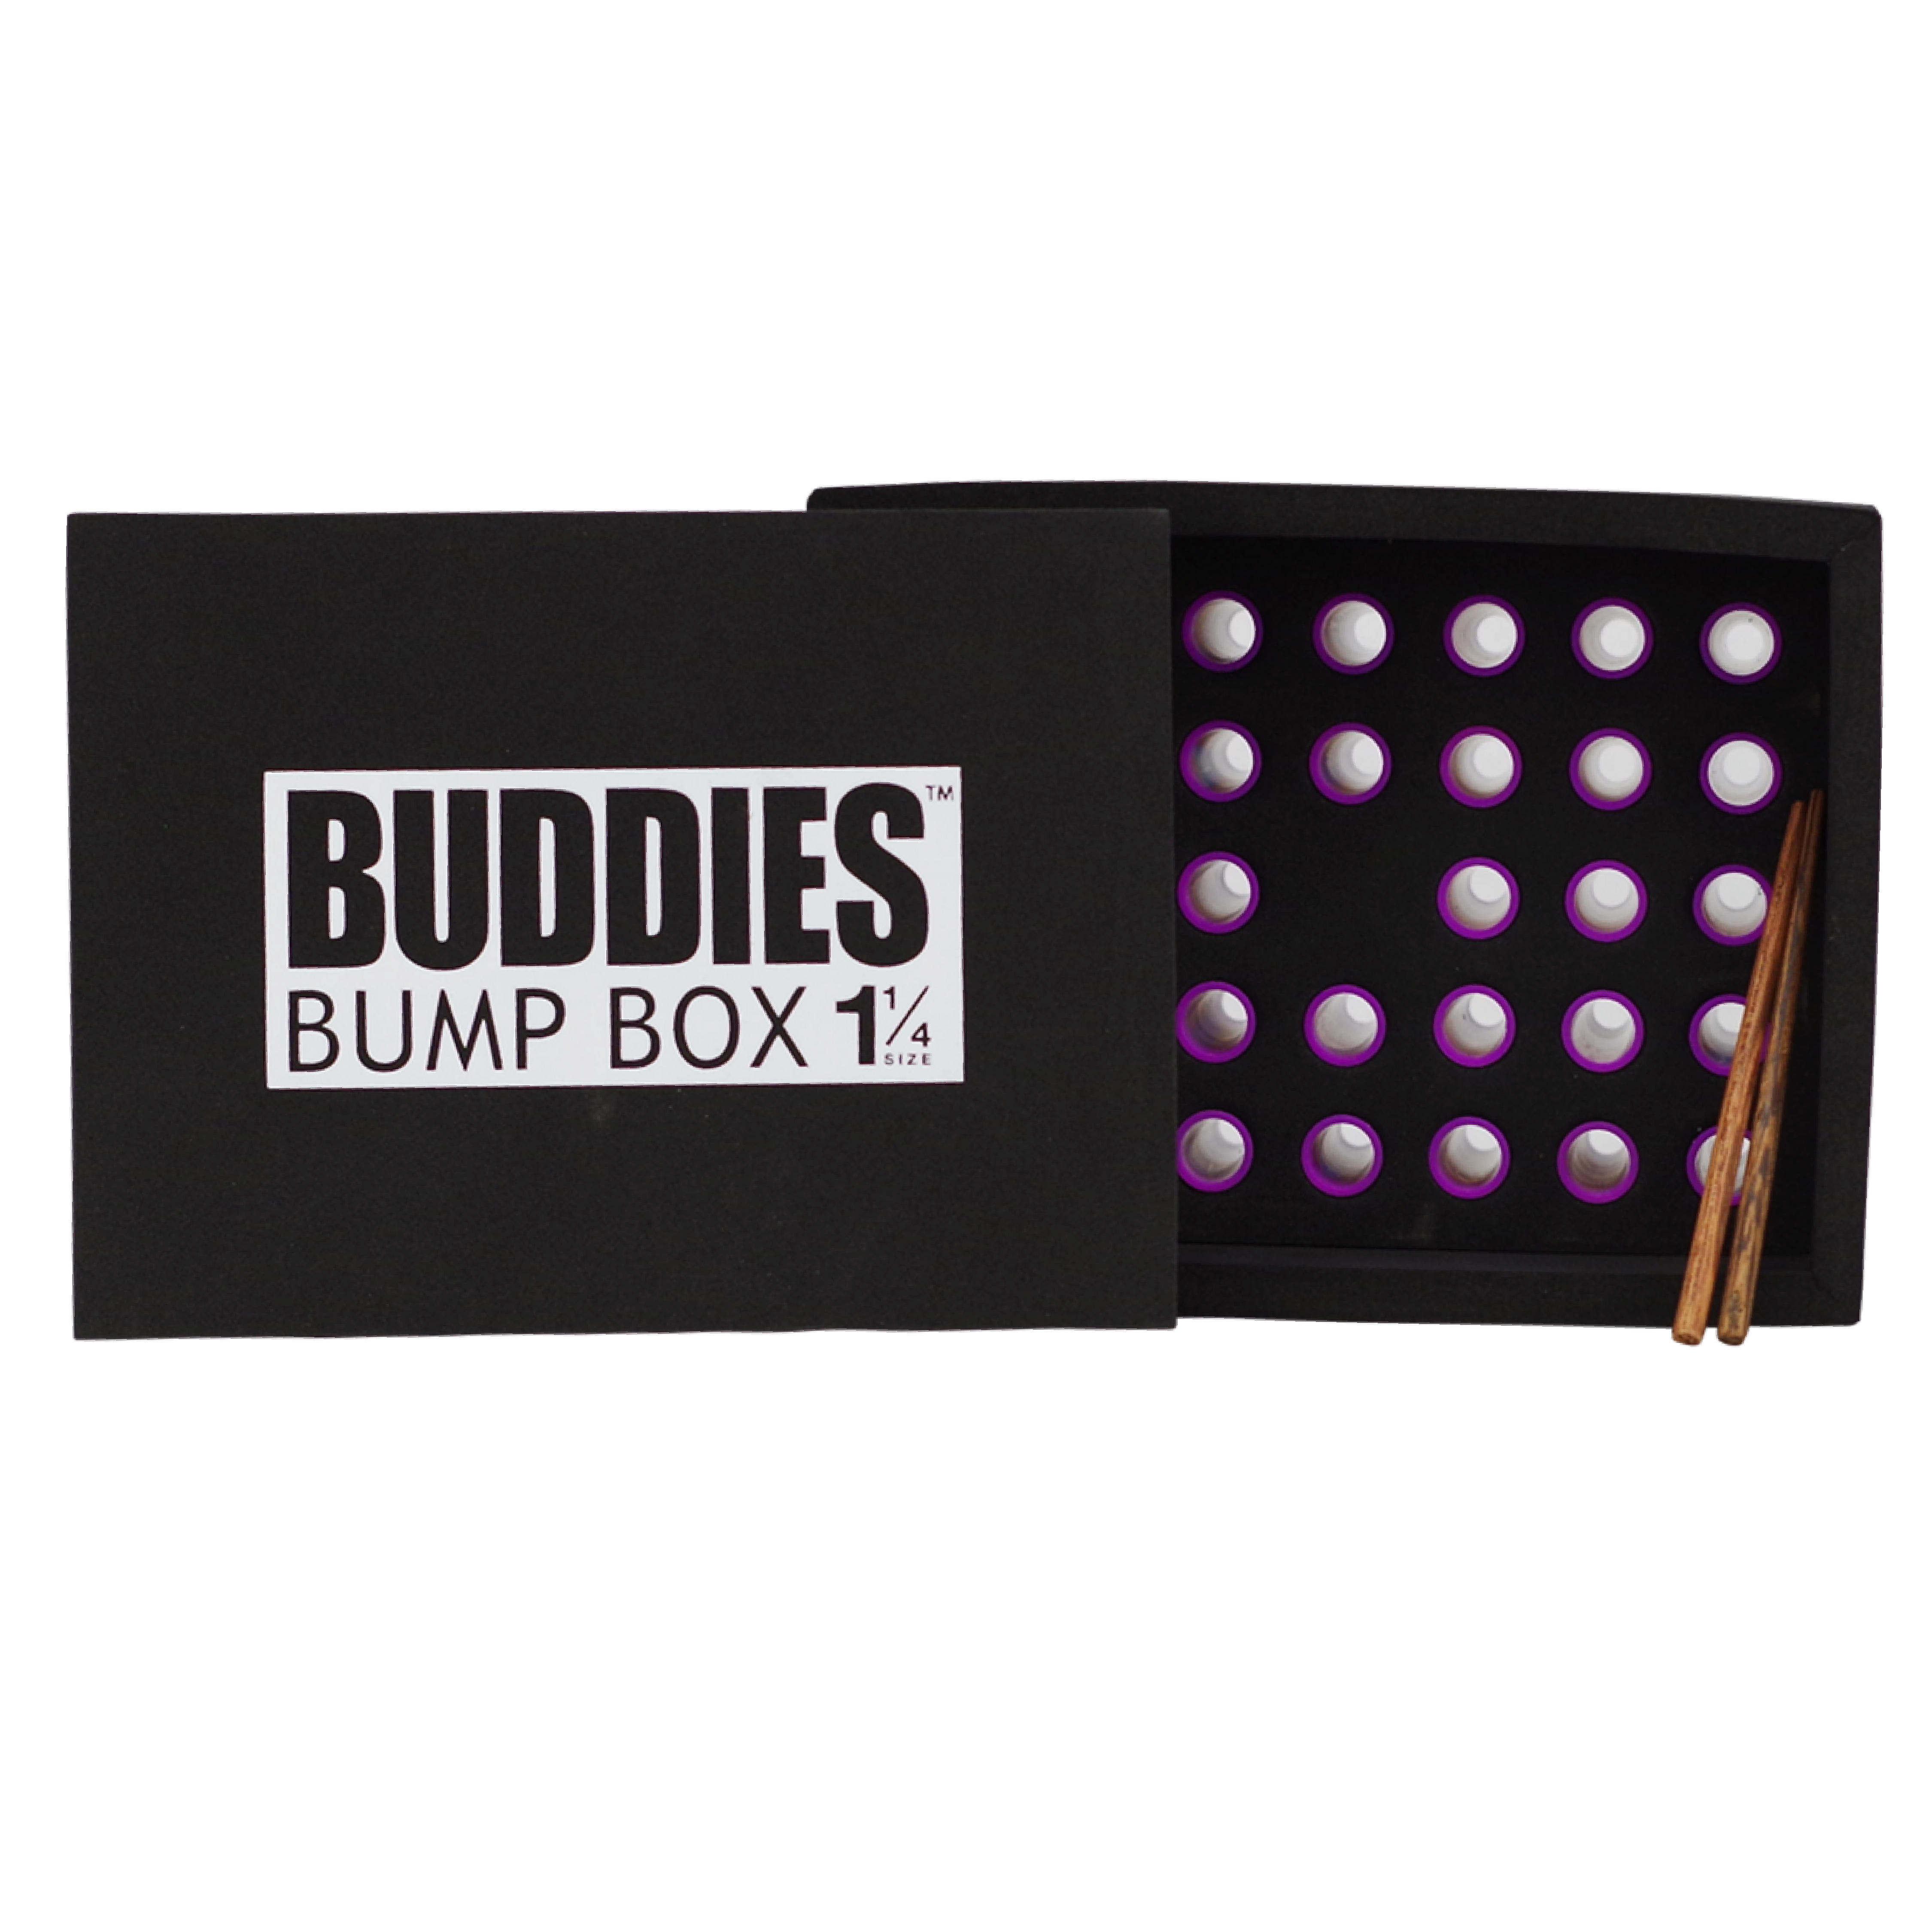 Buddies Bump Box Cone Filling Machine 1 1/4